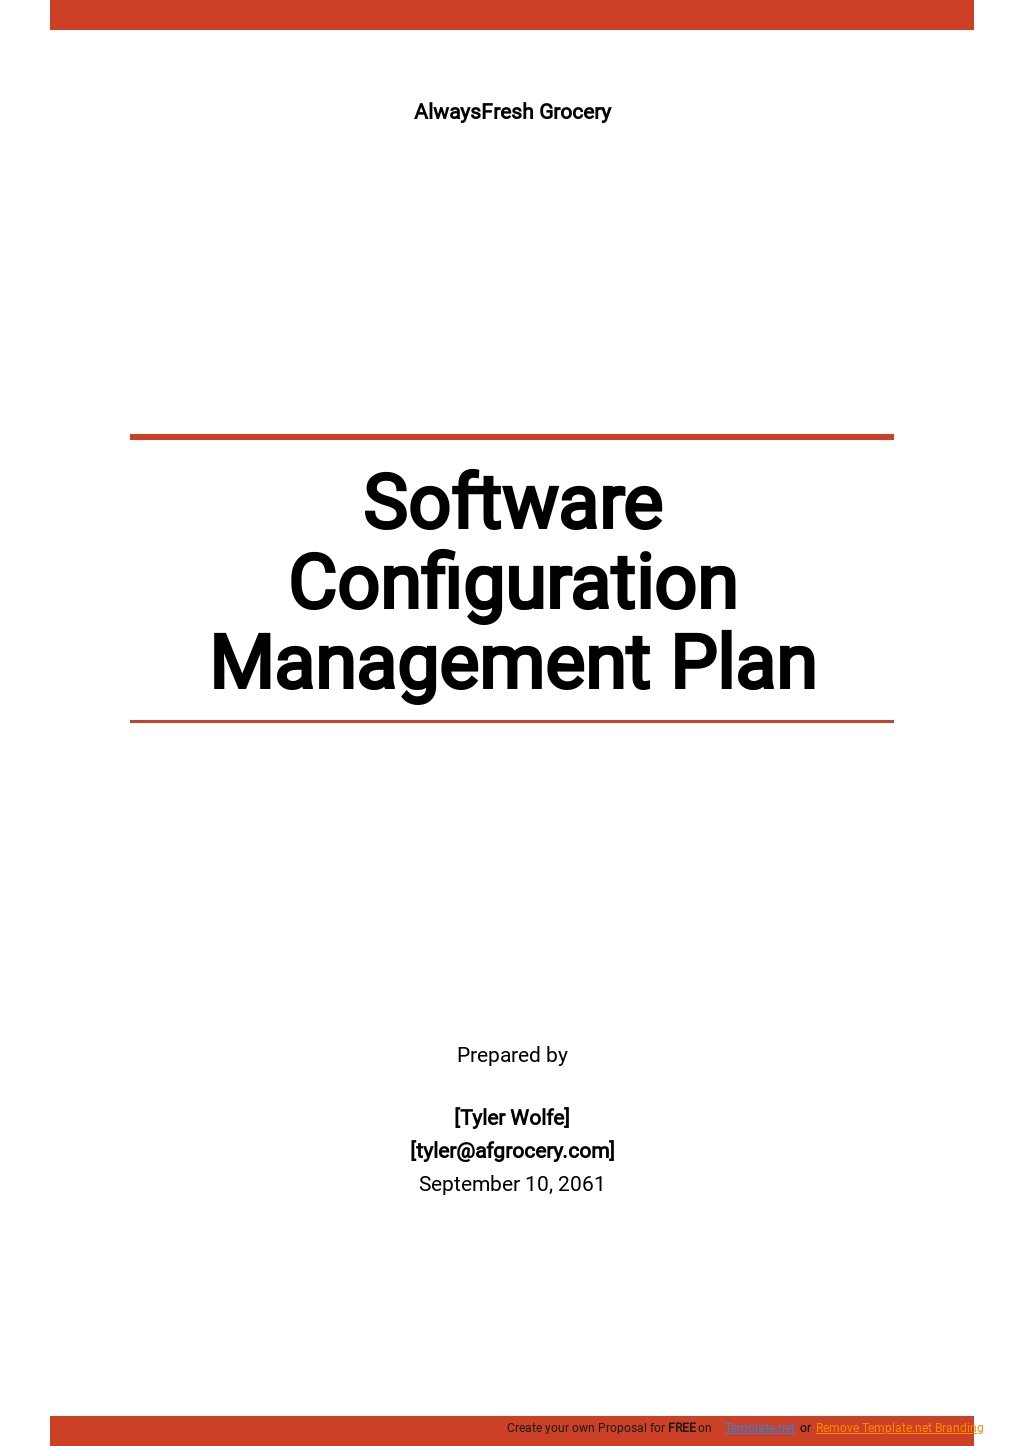 configuration-management-plan-templates-9-docs-free-downloads